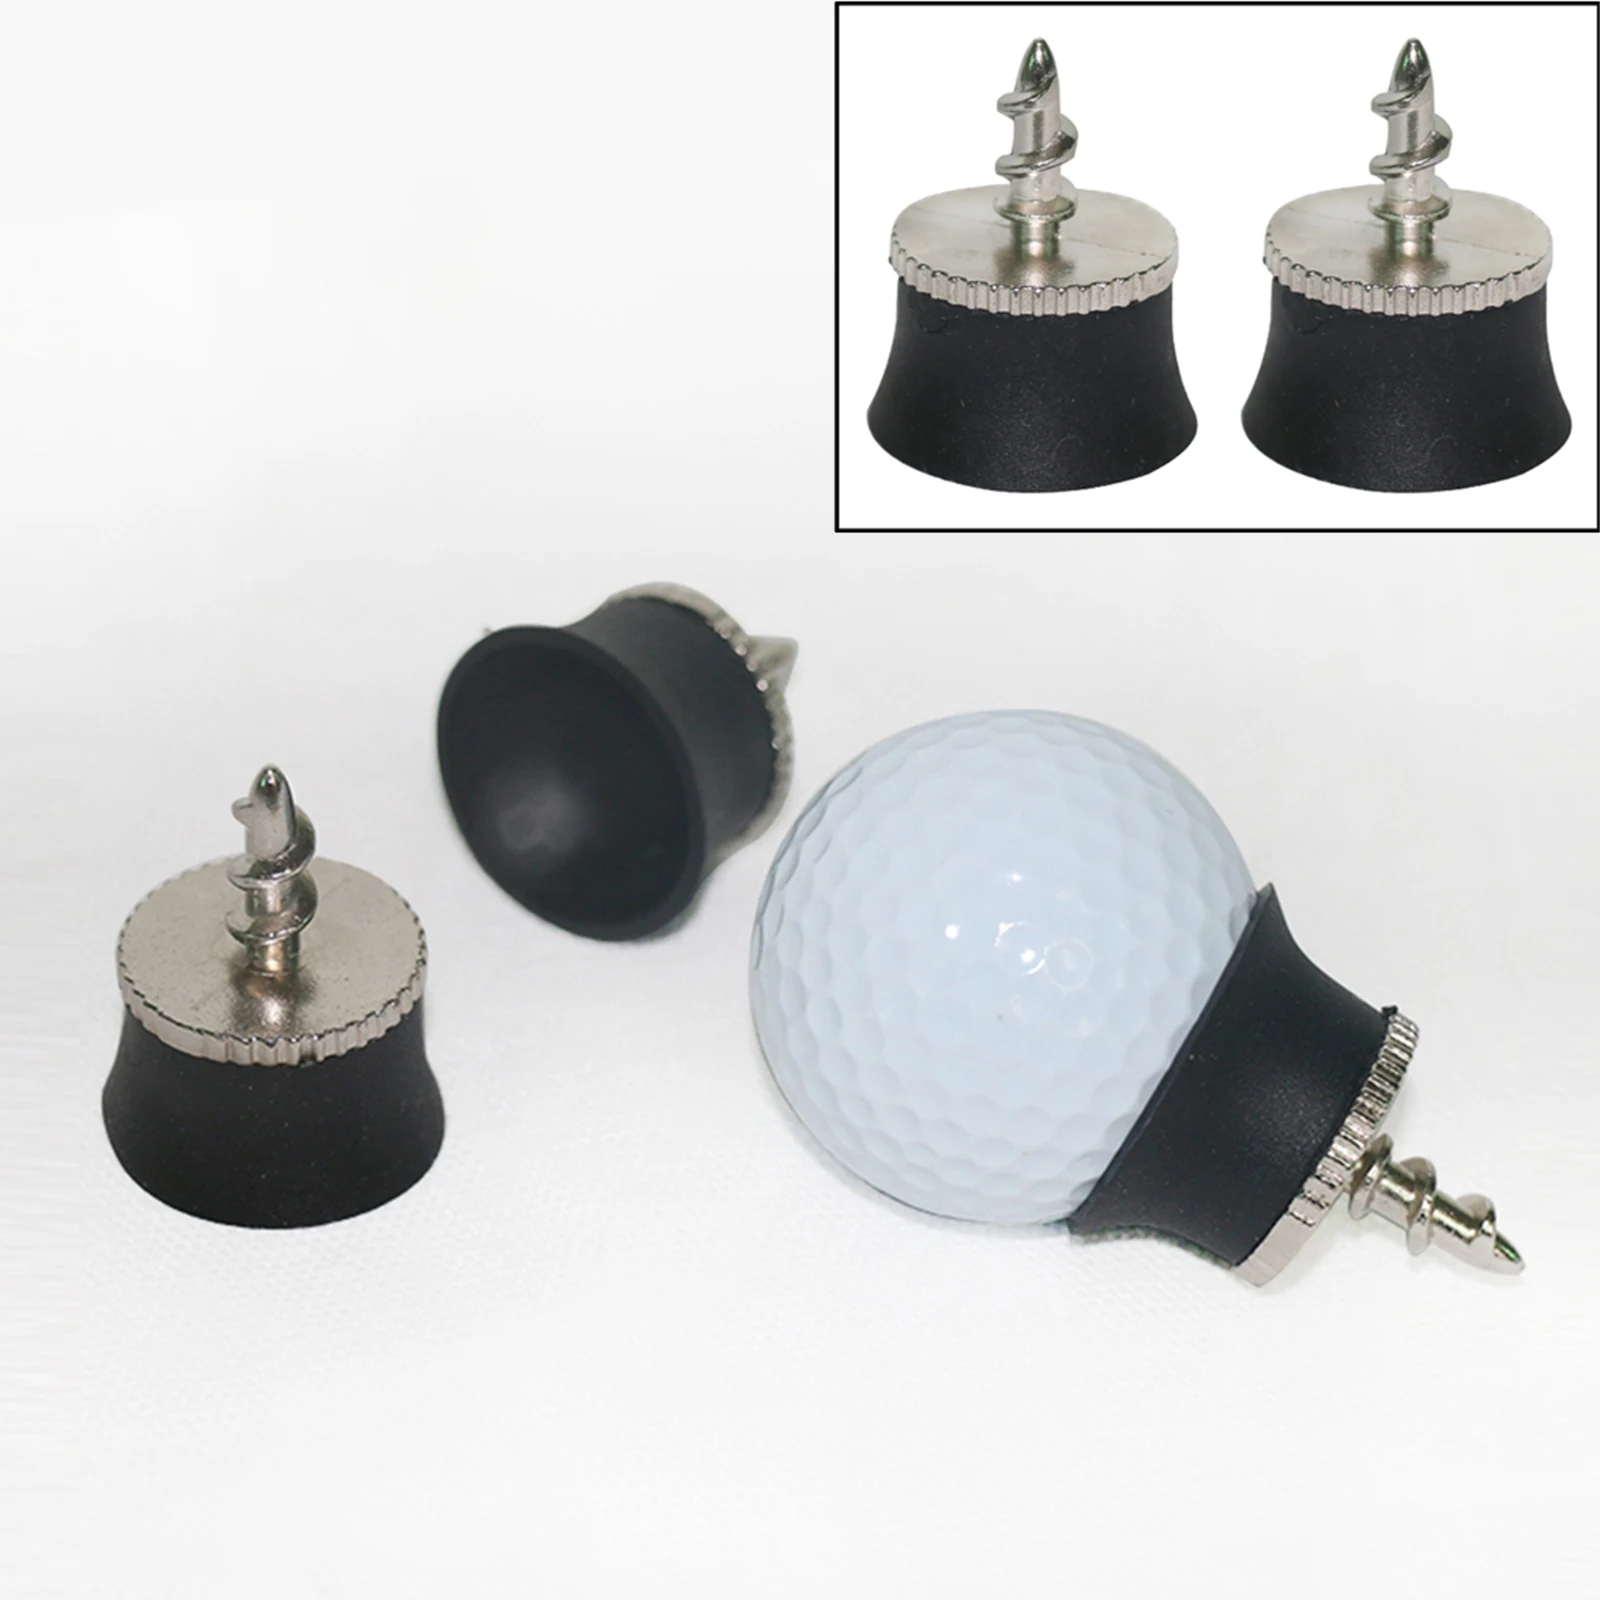 2x Golf Ball Pick Up Putter Grip Suction Cup Ball Grabber Sucker Retriever Tool